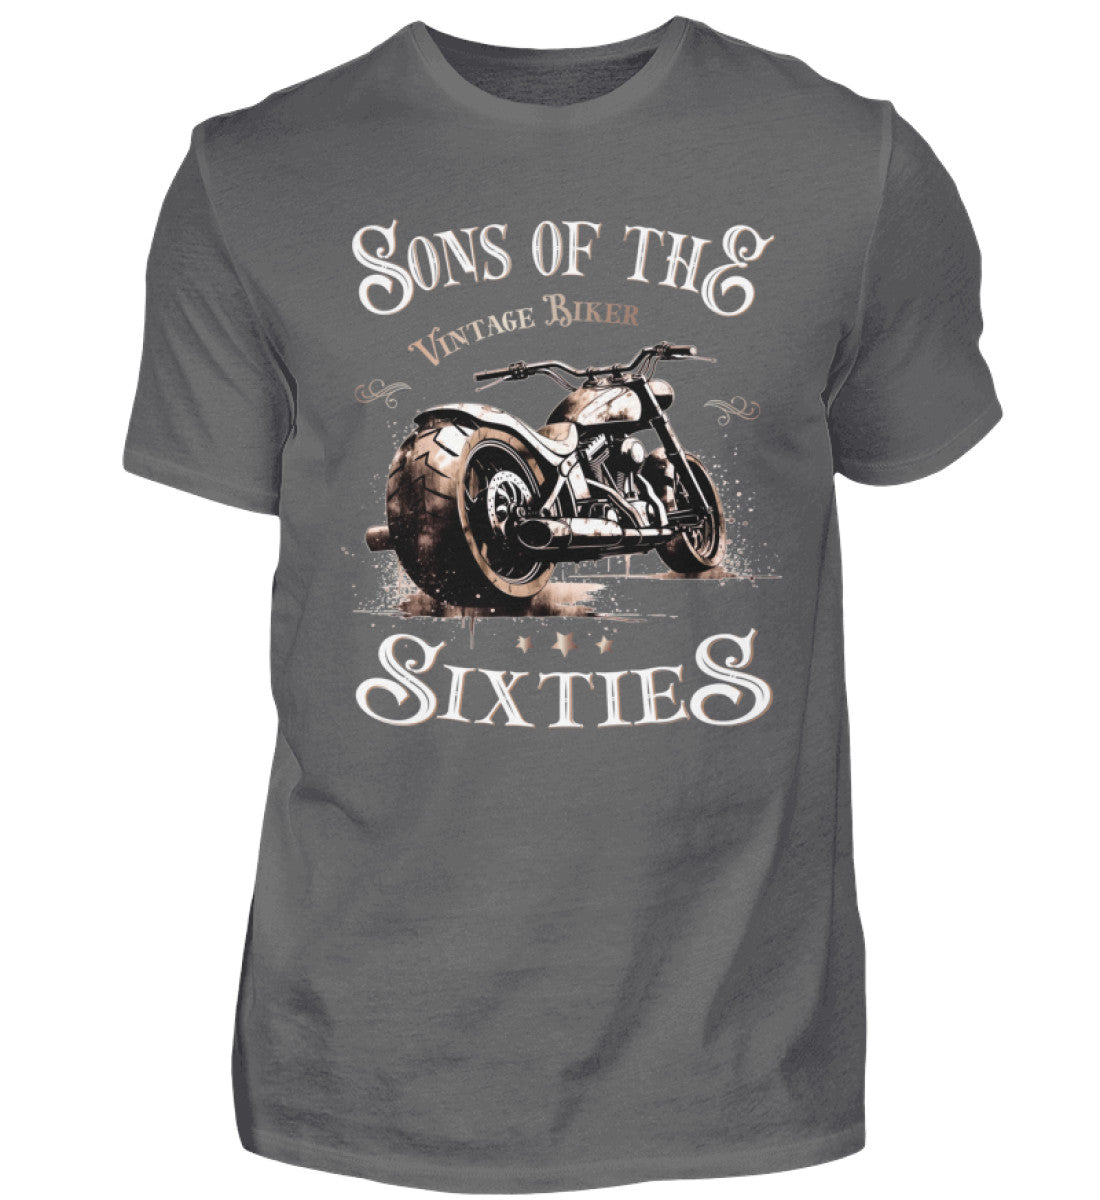 Ein Biker T-Shirt für Motorradfahrer von Wingbikers mit dem Aufdruck, Sons of the Sixties - Vintage Biker, in grau.